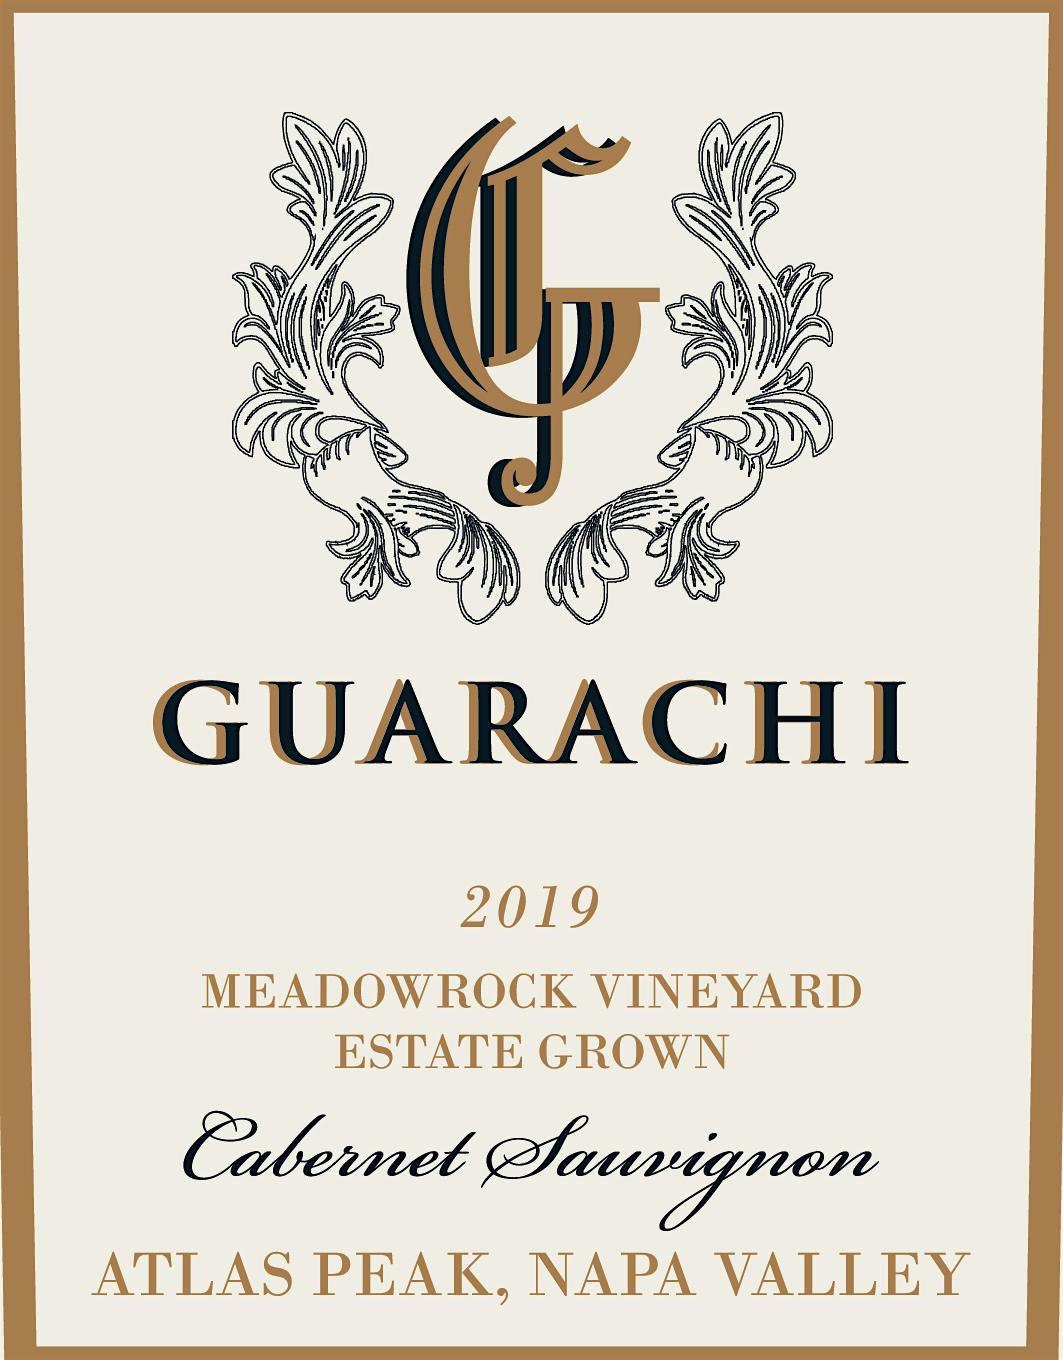 Label for Guarachi